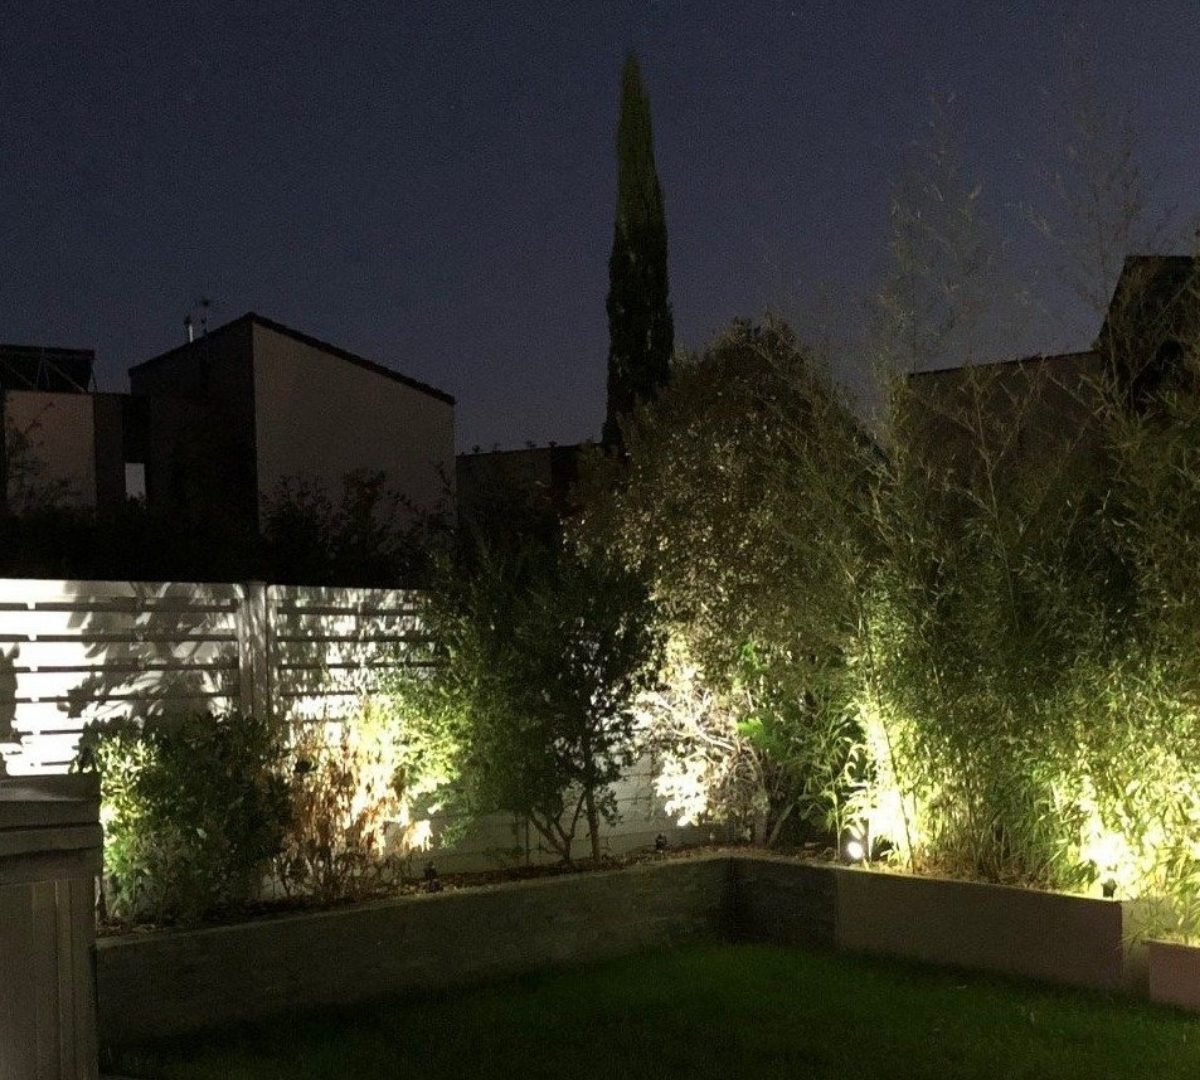 Projecteur LED de jardin 15W- Spot avec piquet - ®